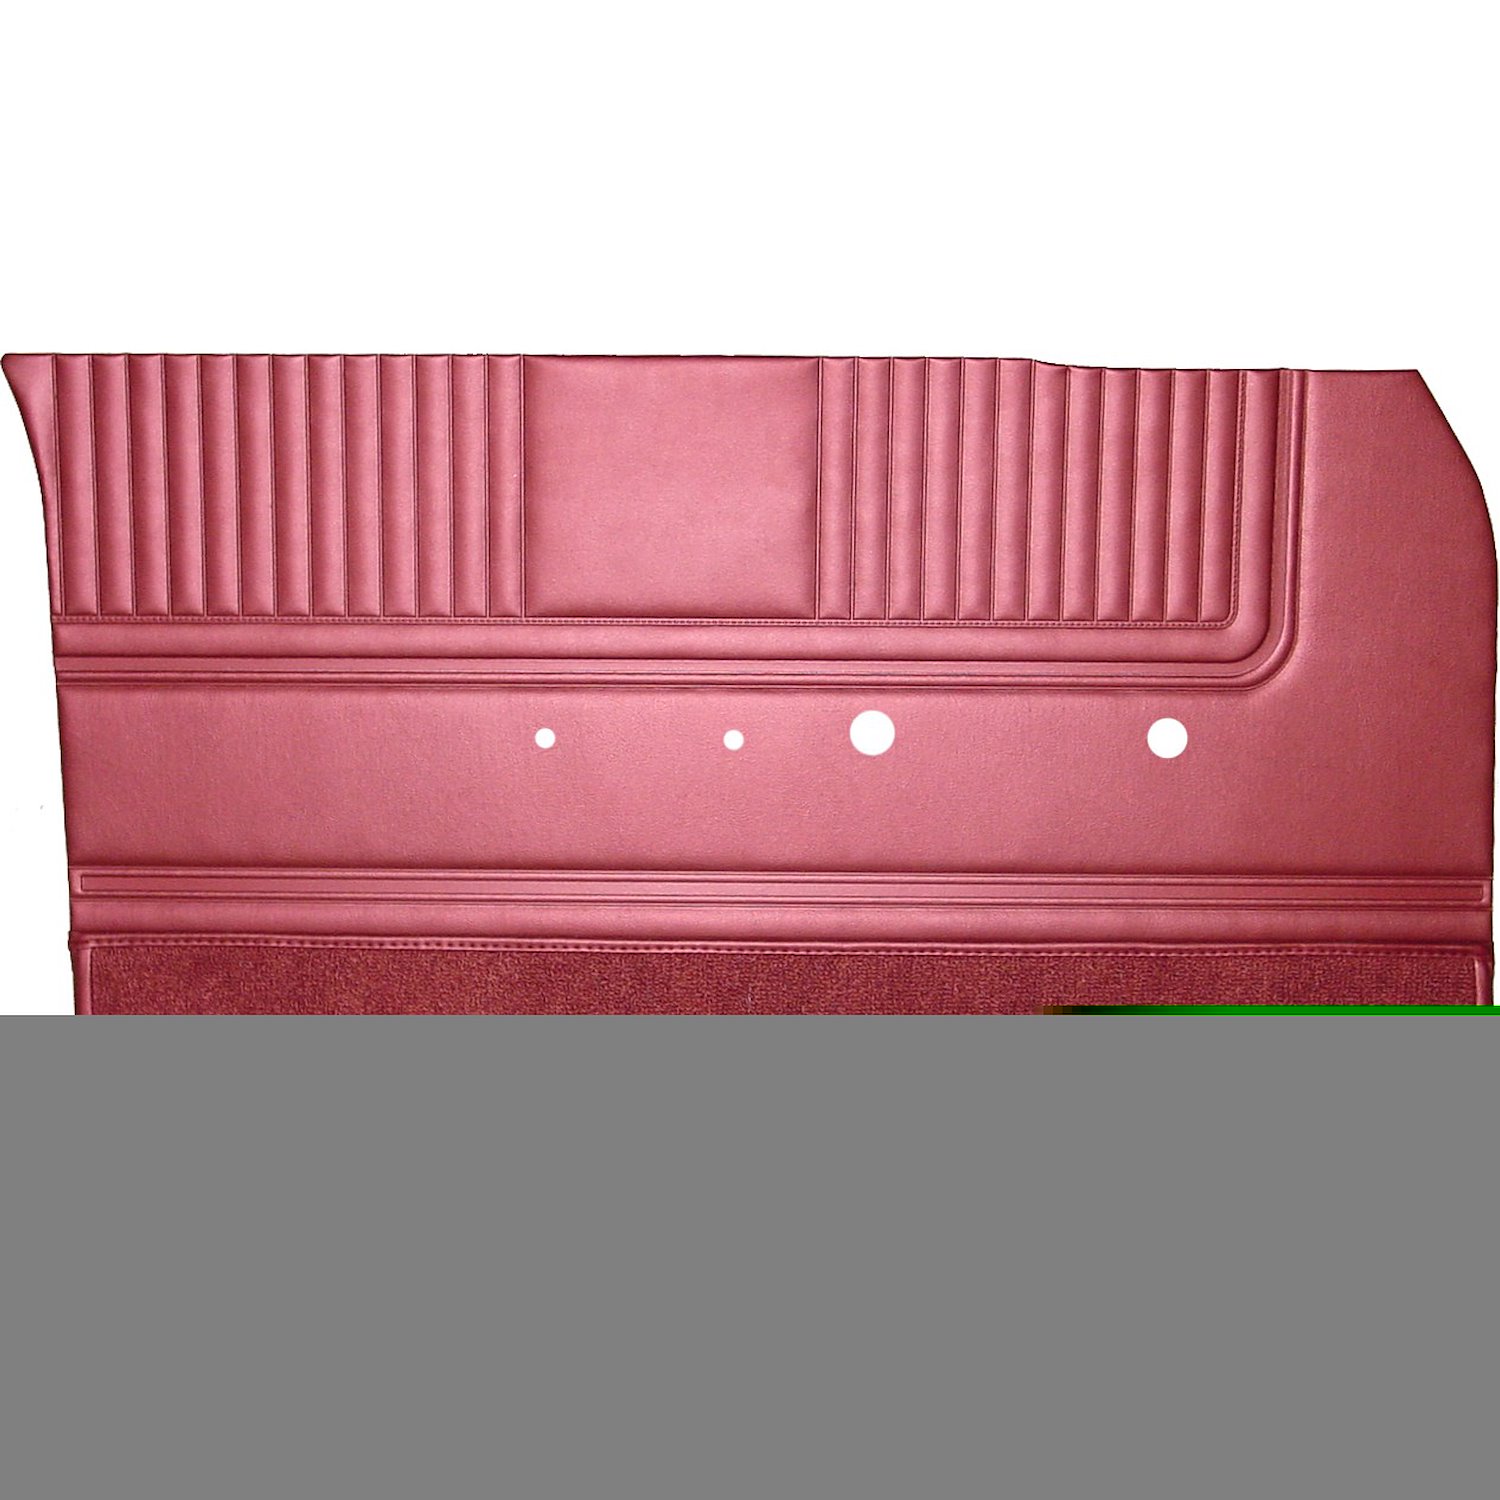 DO65CF0001052021 65 SPORT FURY DOOR PANELS - METALLIC RED W/ MED RED CARPET